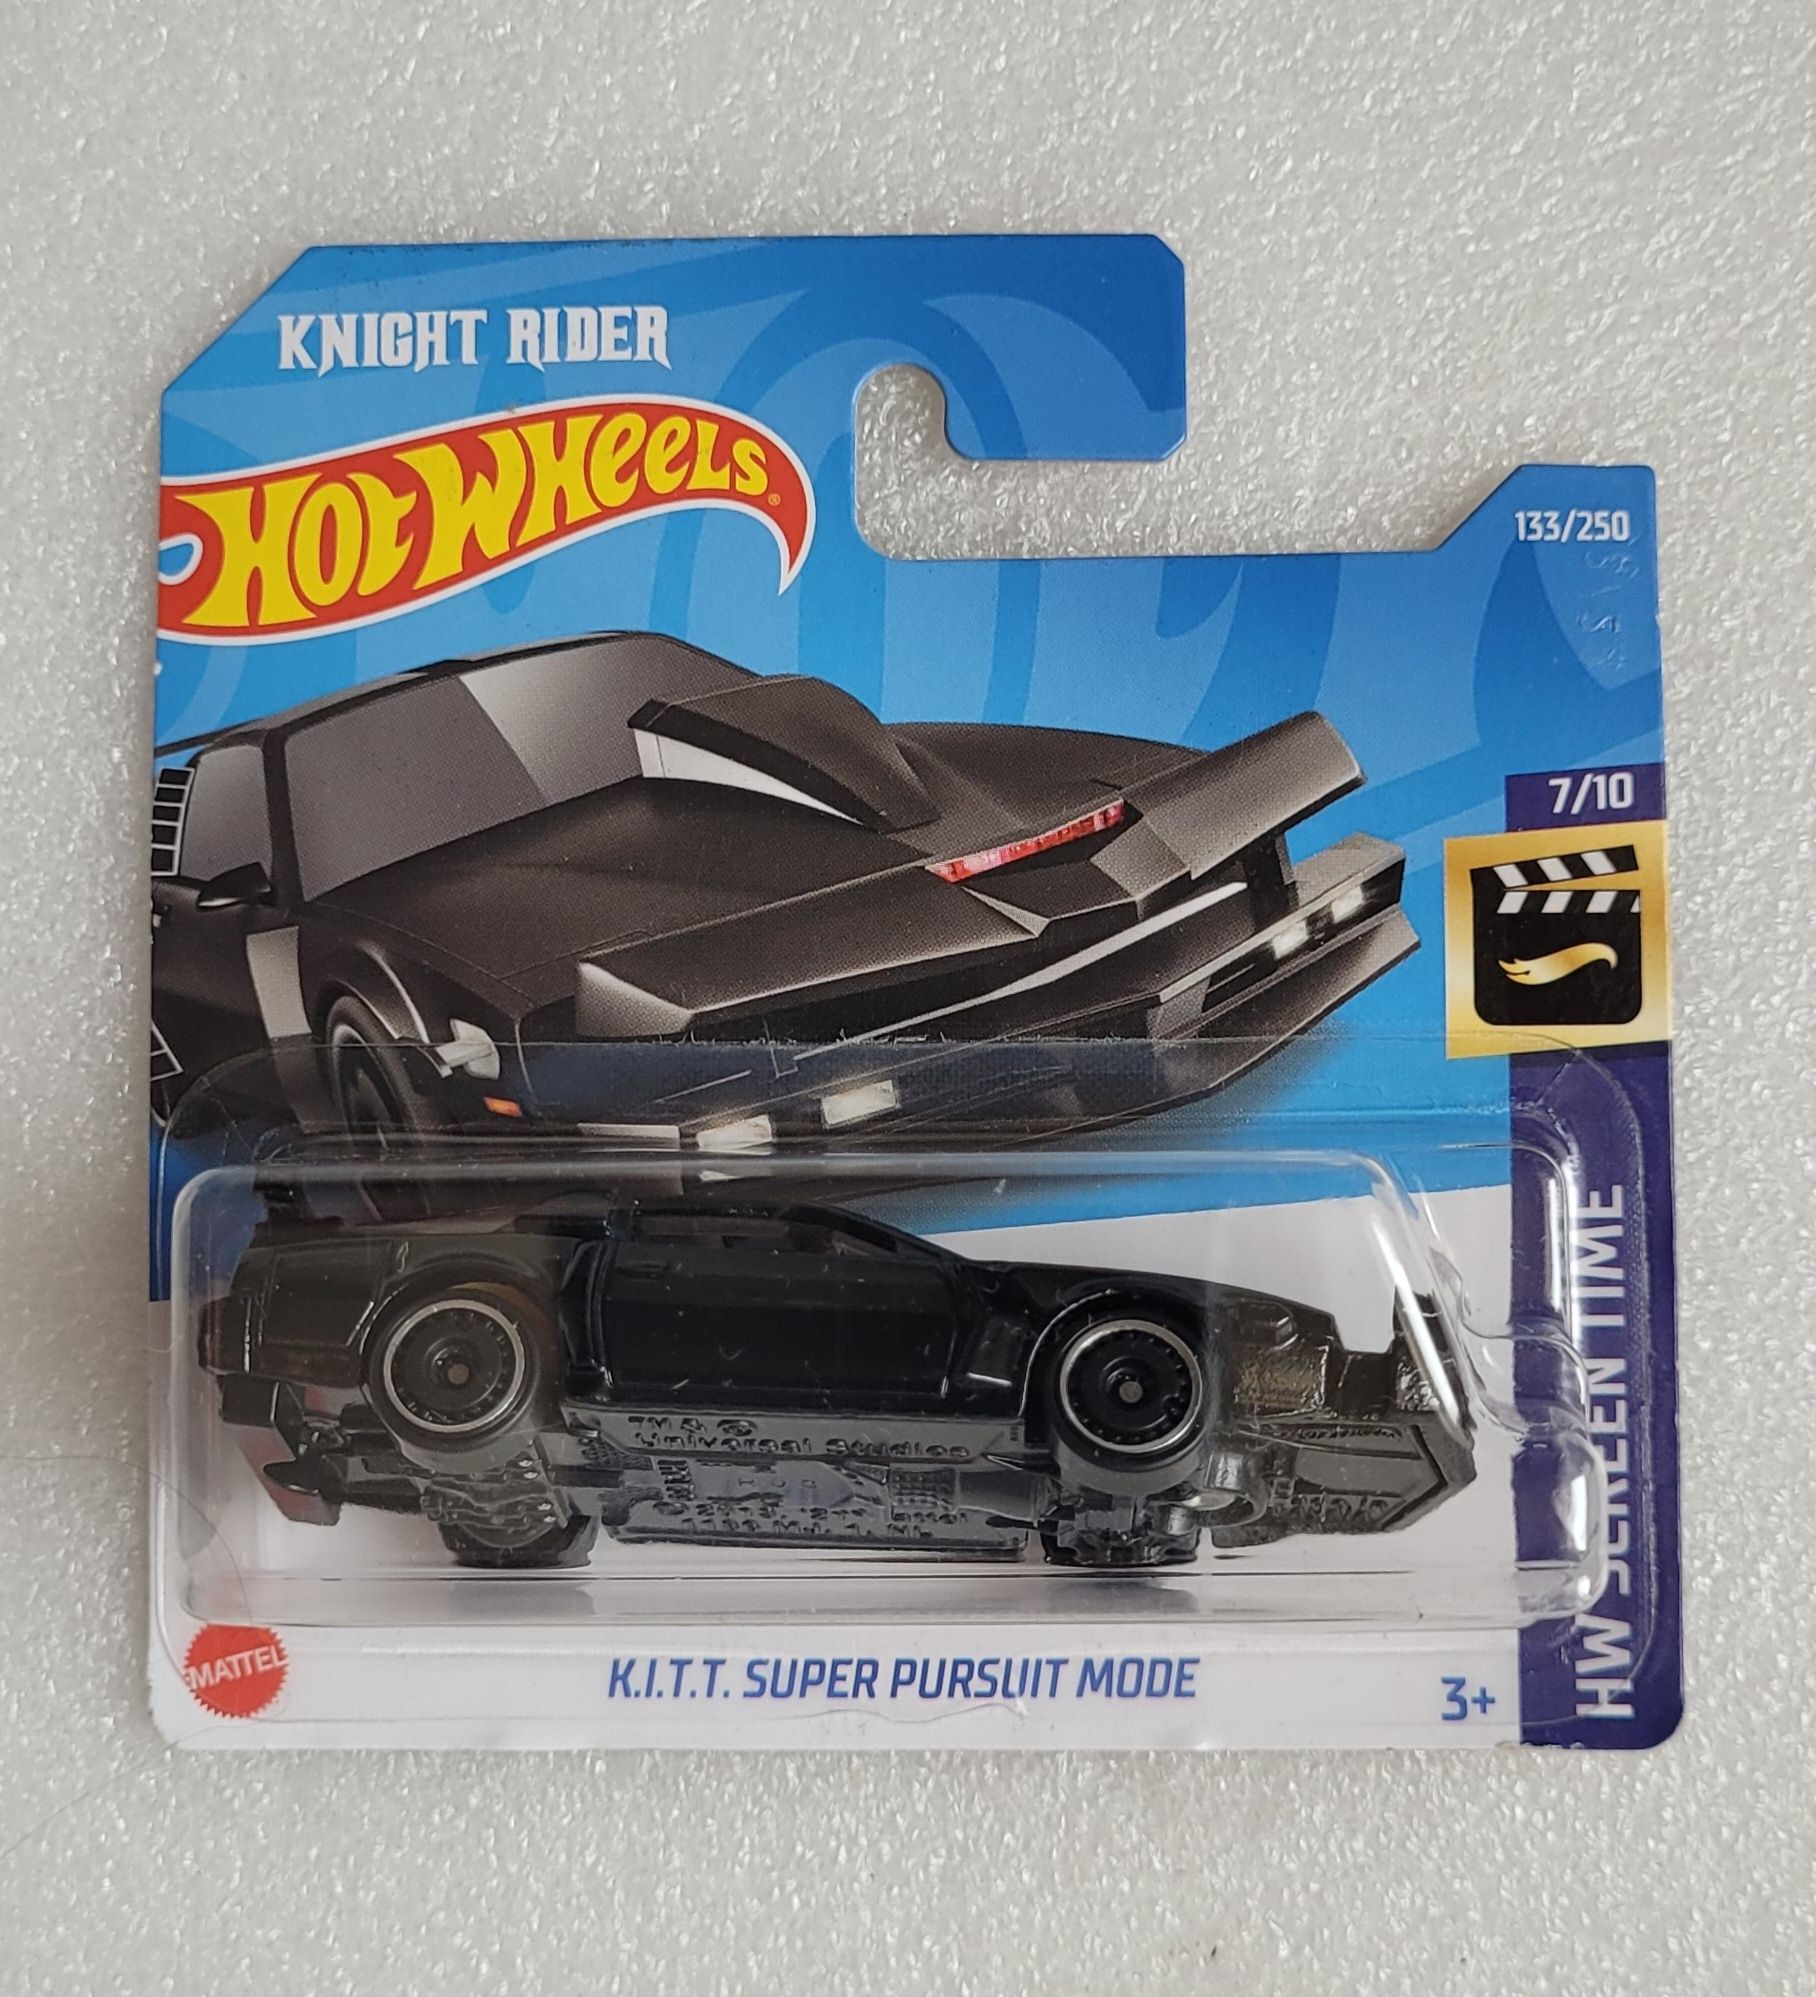 KITT Super Pursuit Mode Hot Wheels